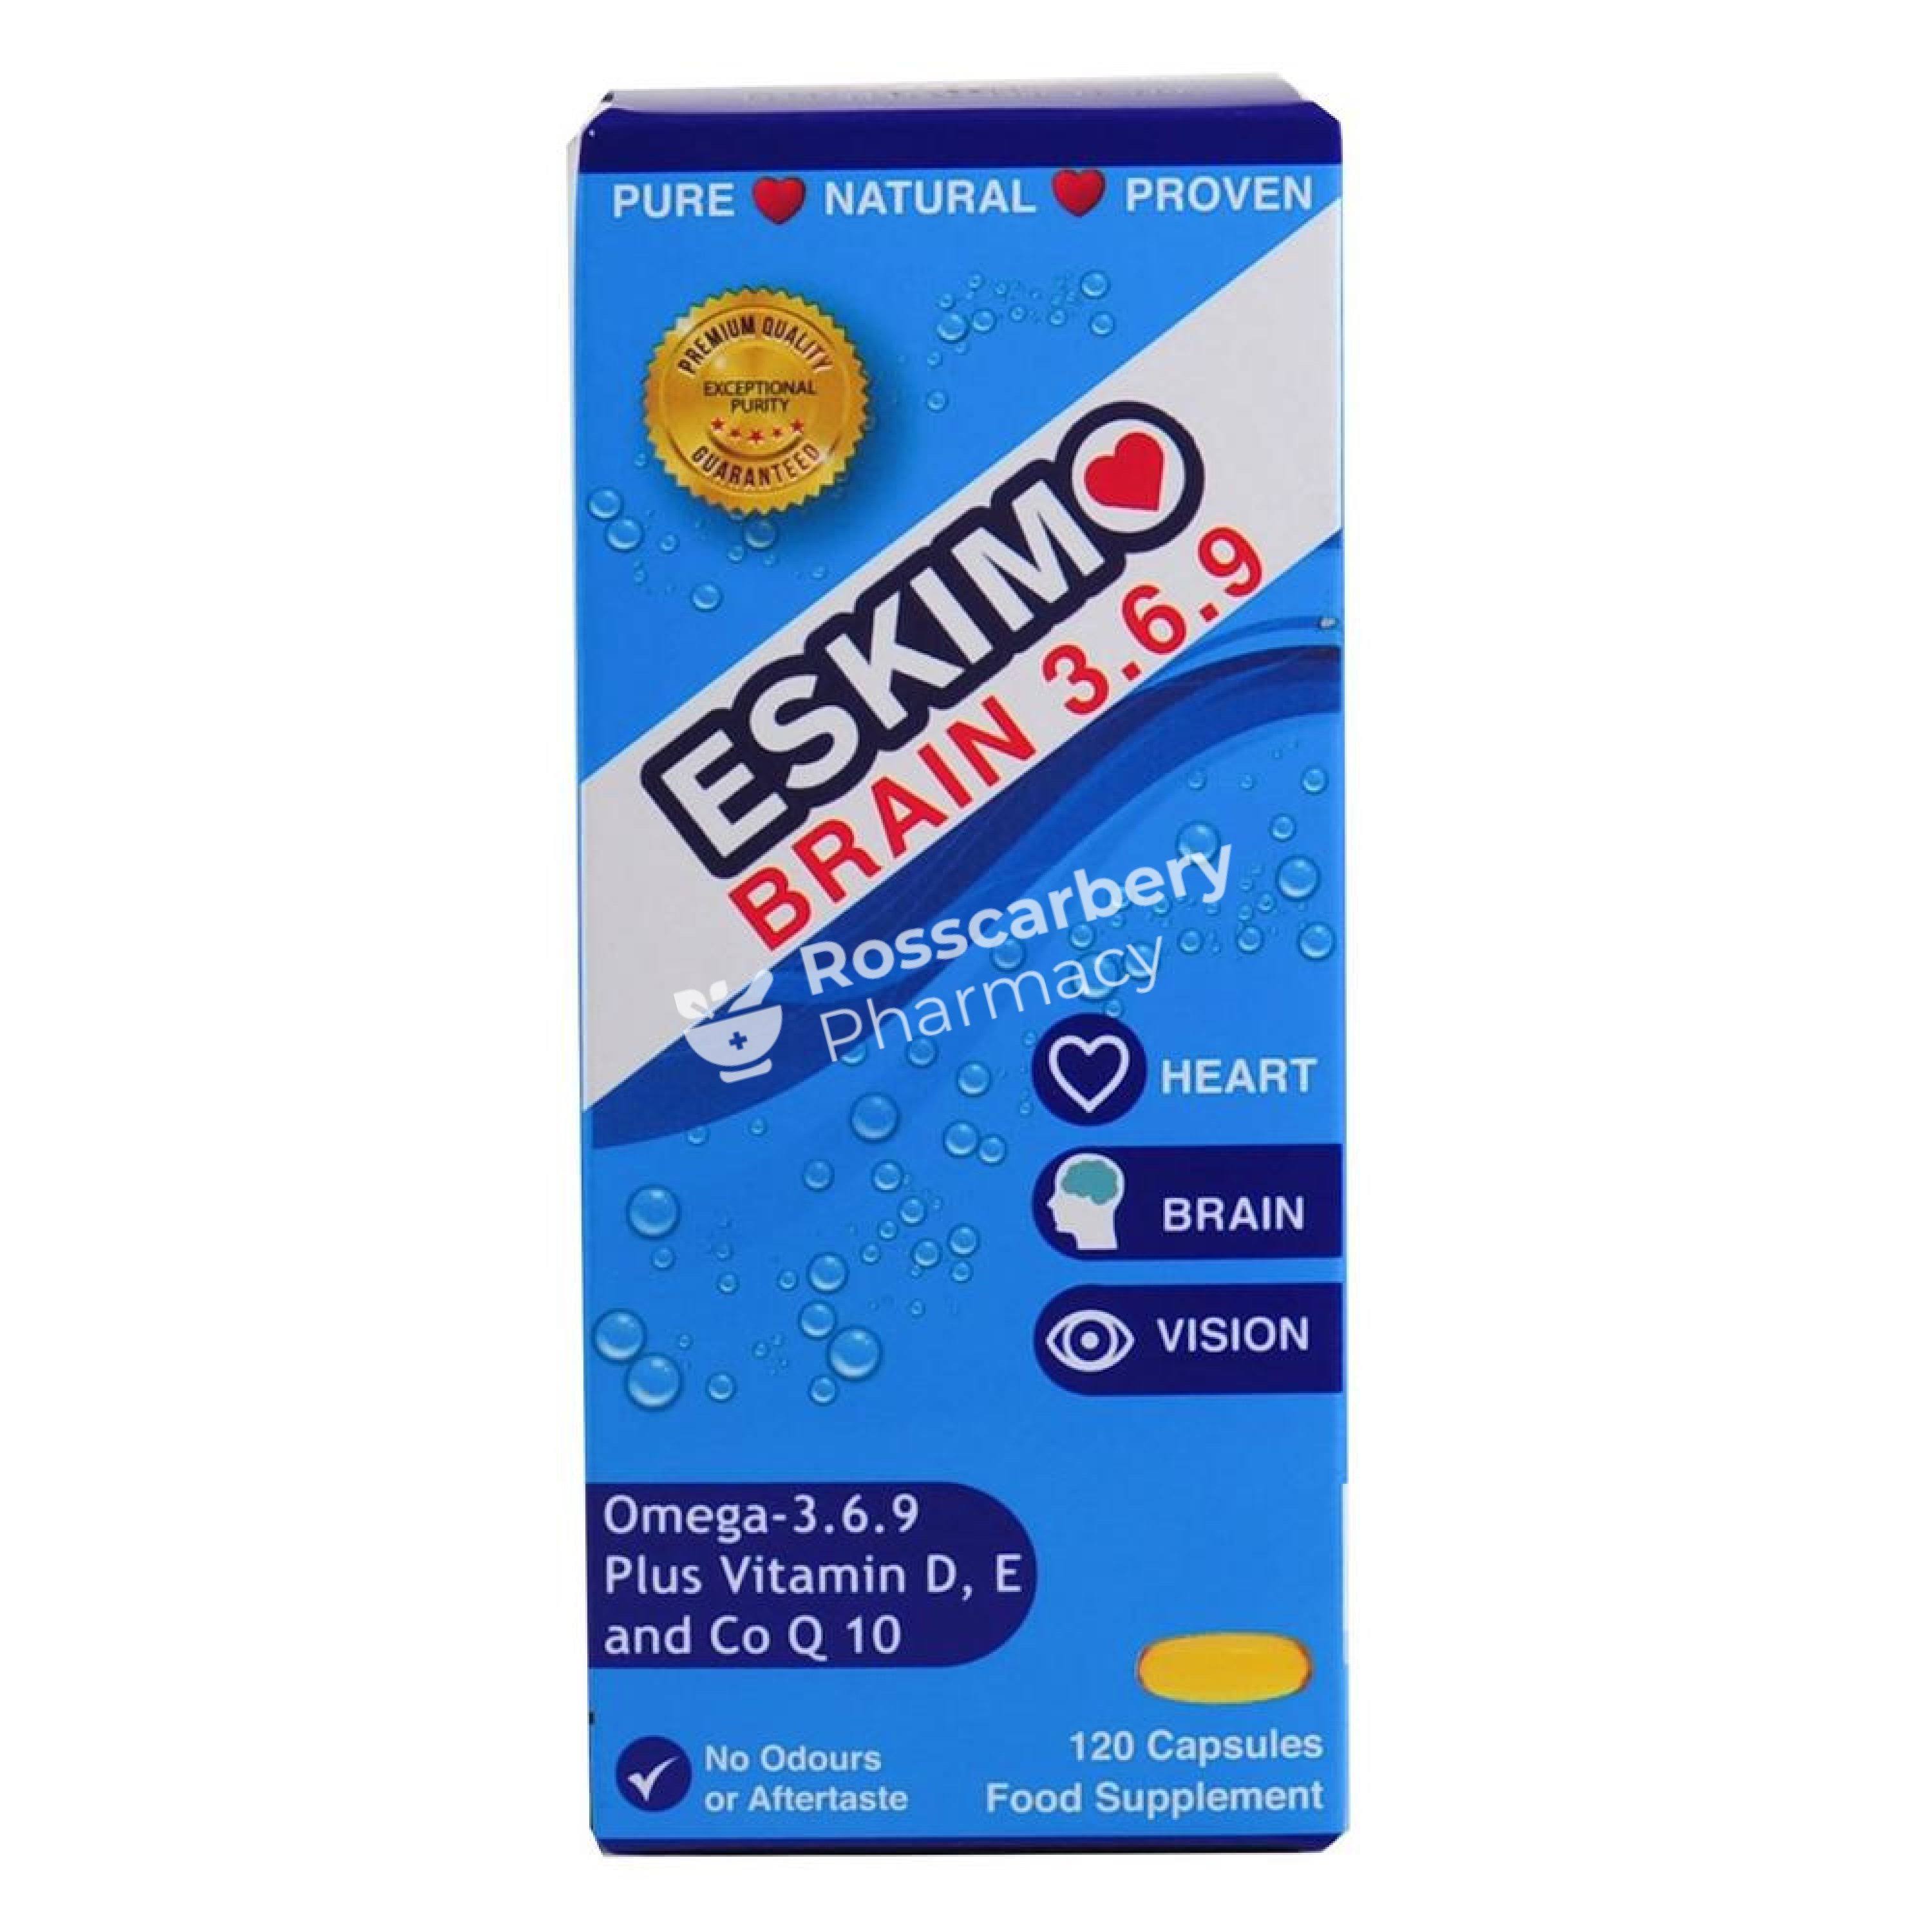 Eskimo-3 Brainsharp Pure Omega-3 Fish Oil - 120pk